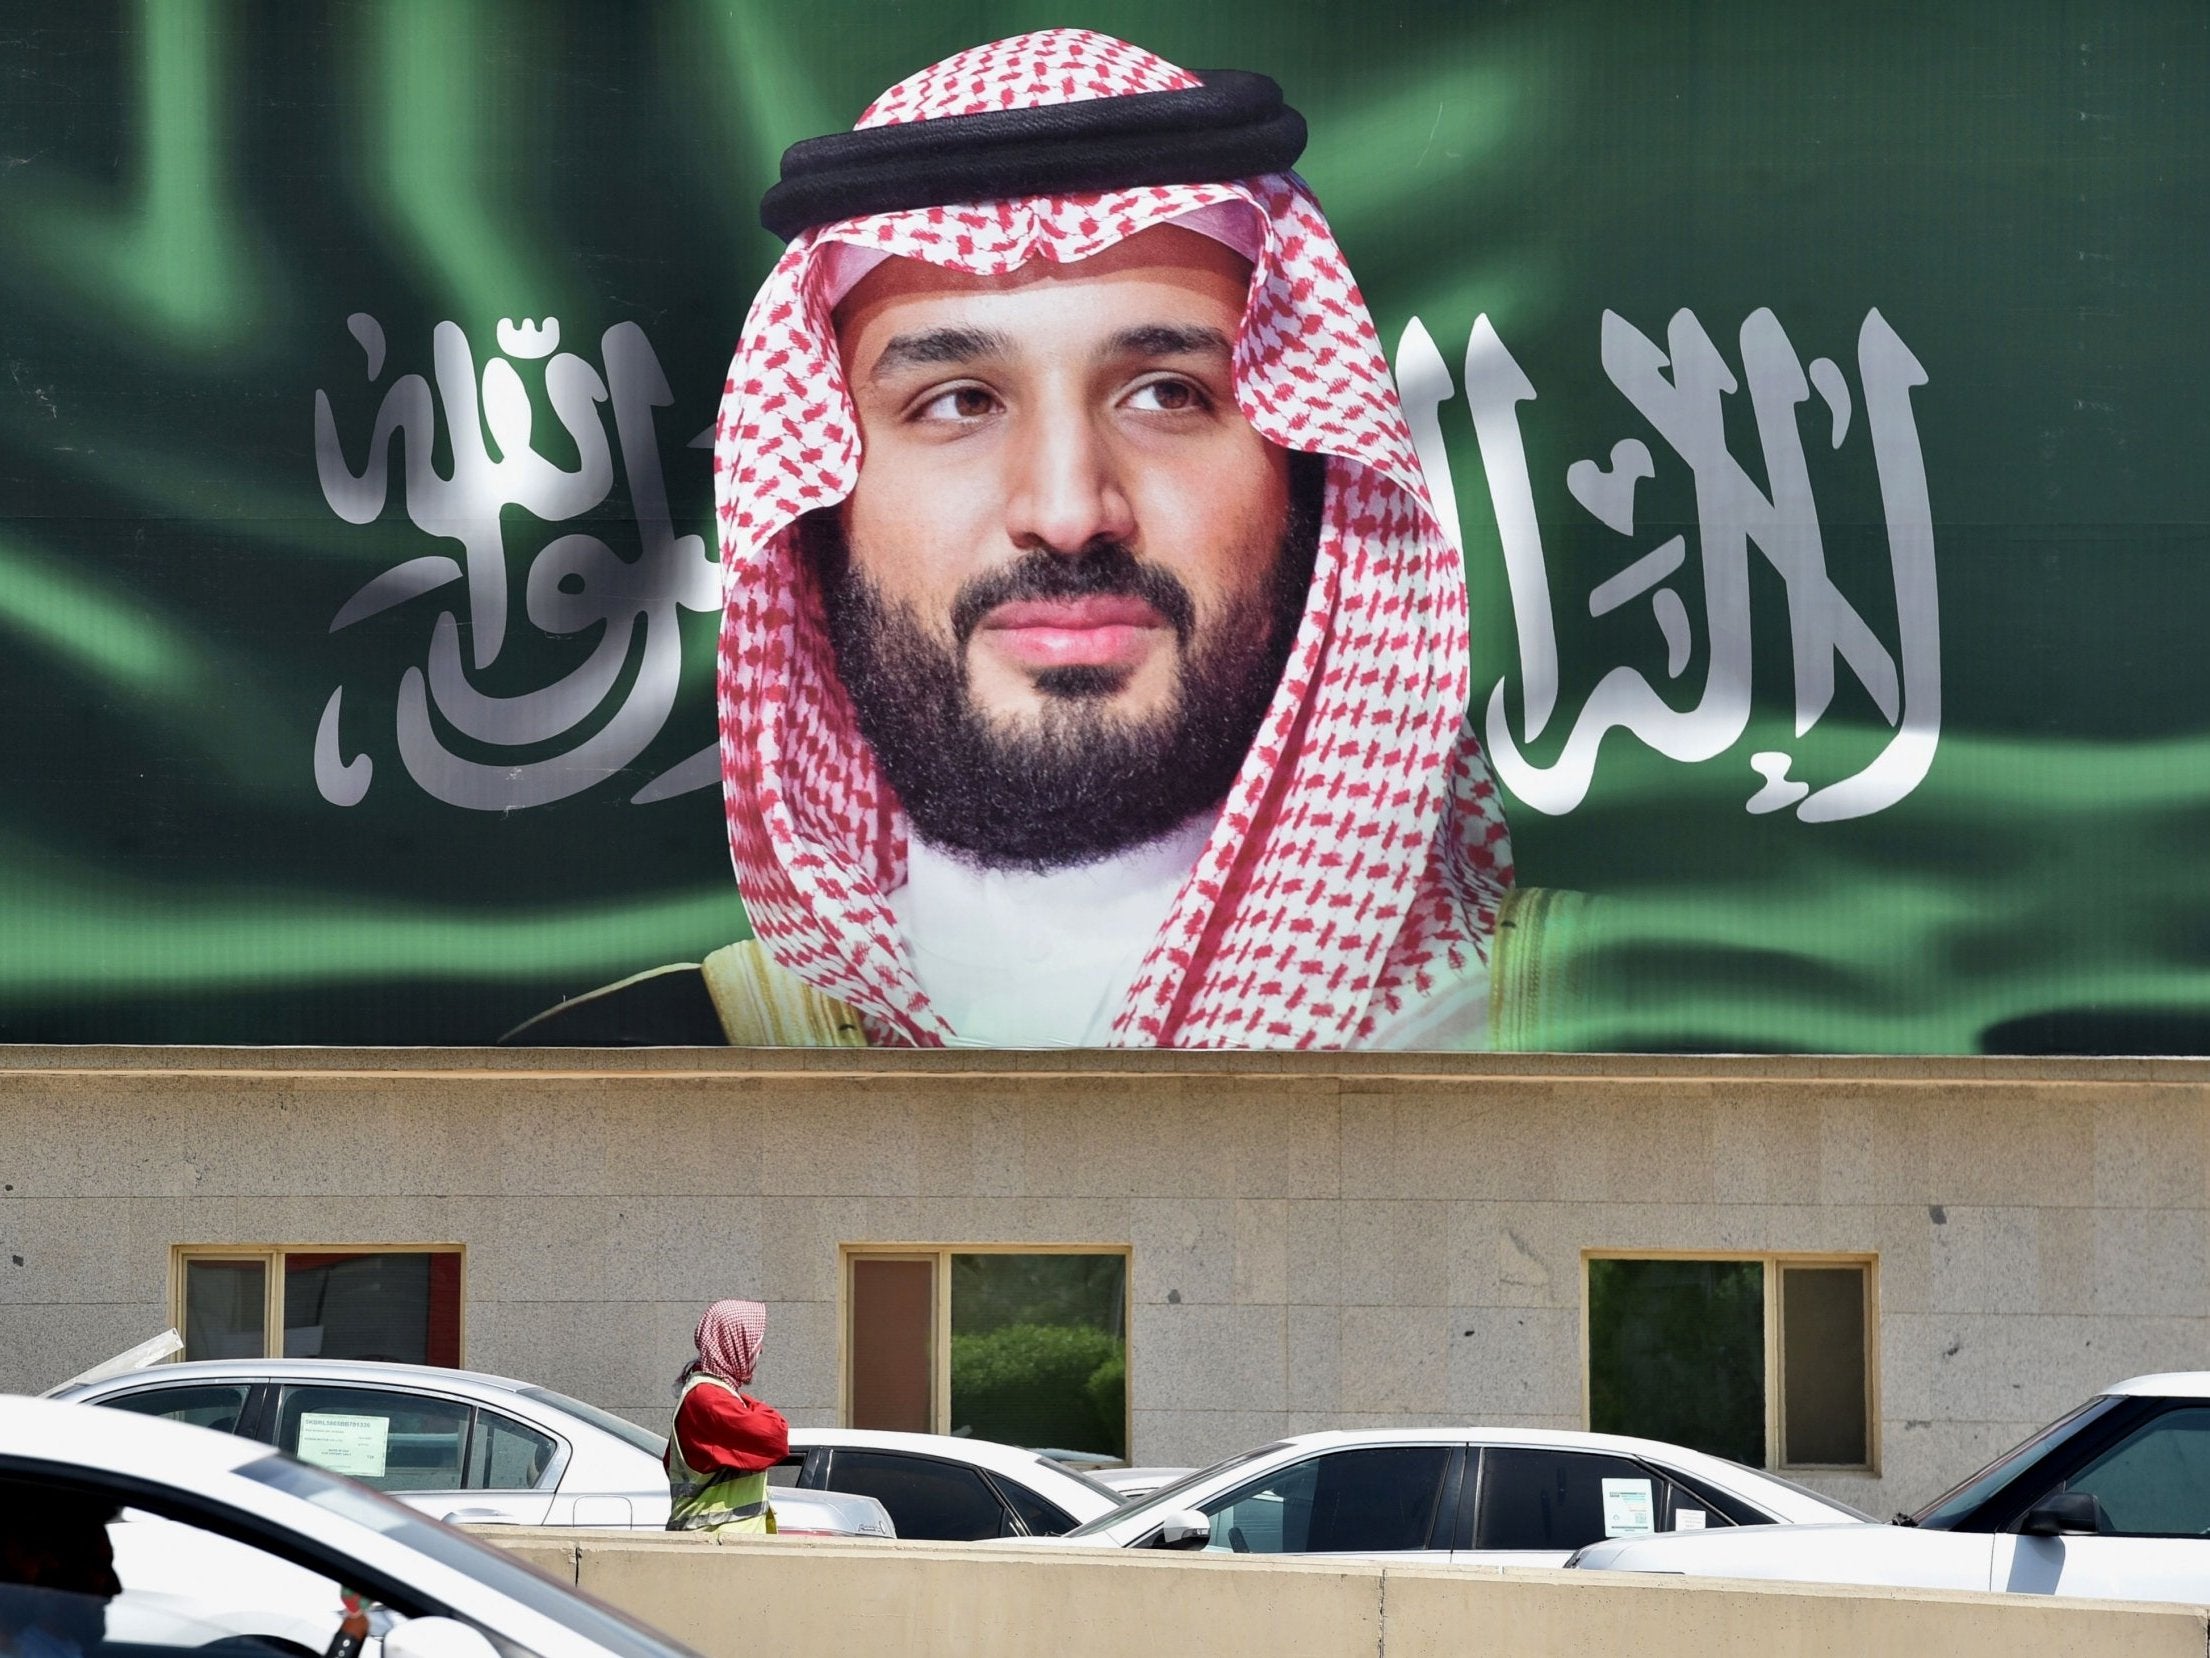 A portrait of Mohammed bin Salman is displayed in Riyadh